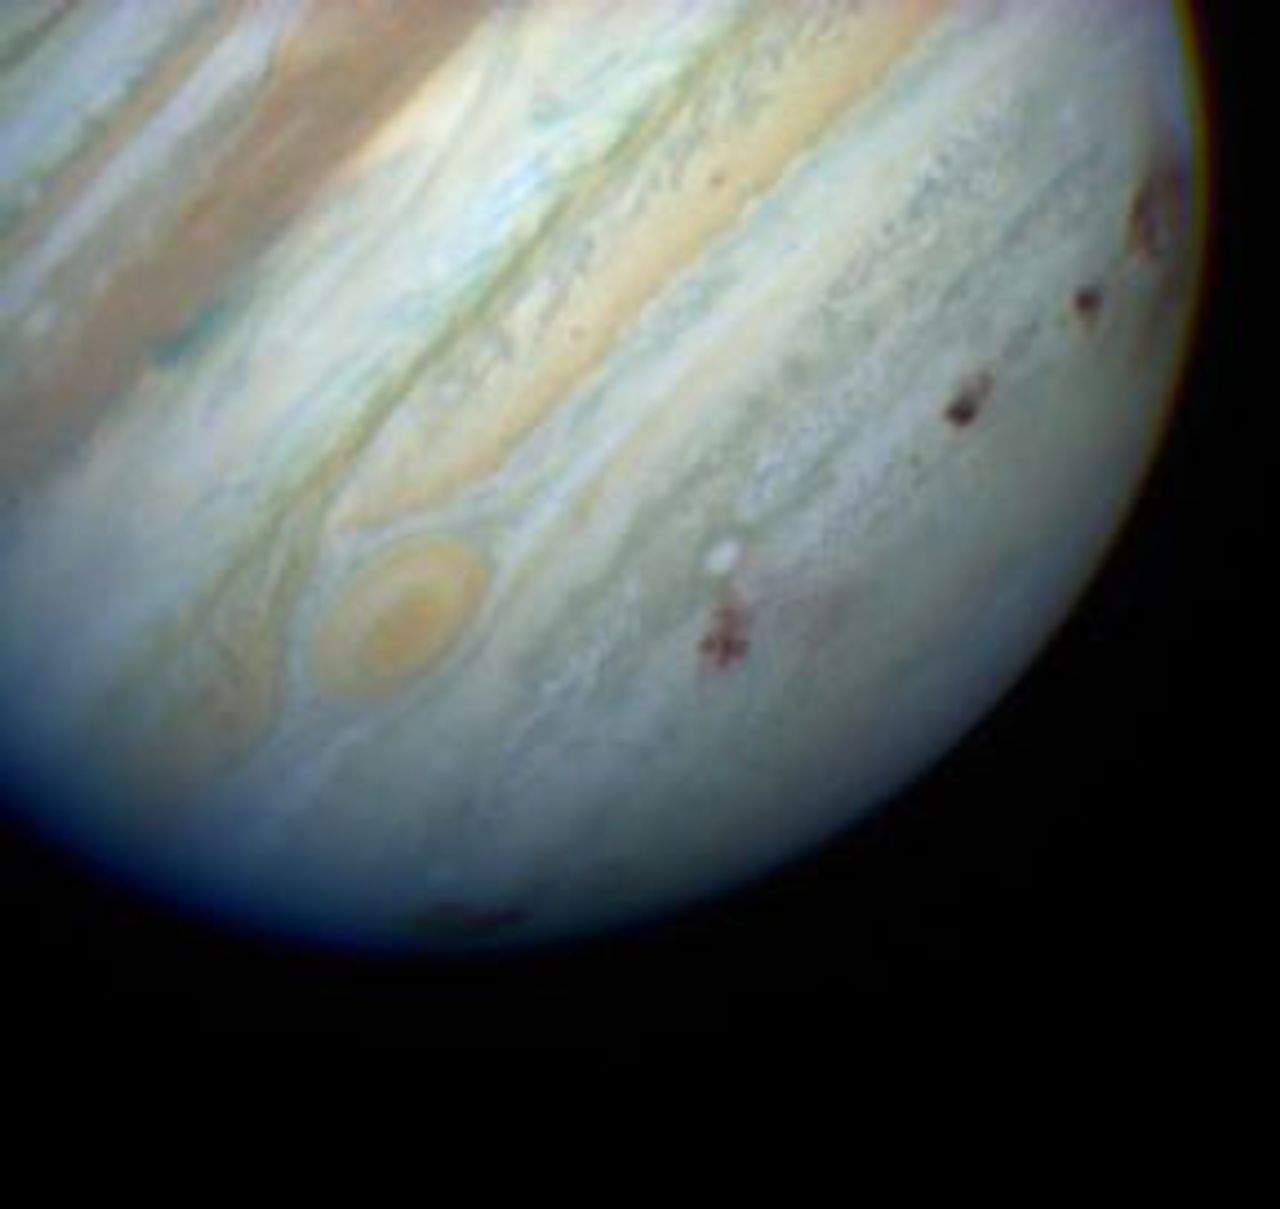 Comet Shoemaker-Levy impacting Jupiter